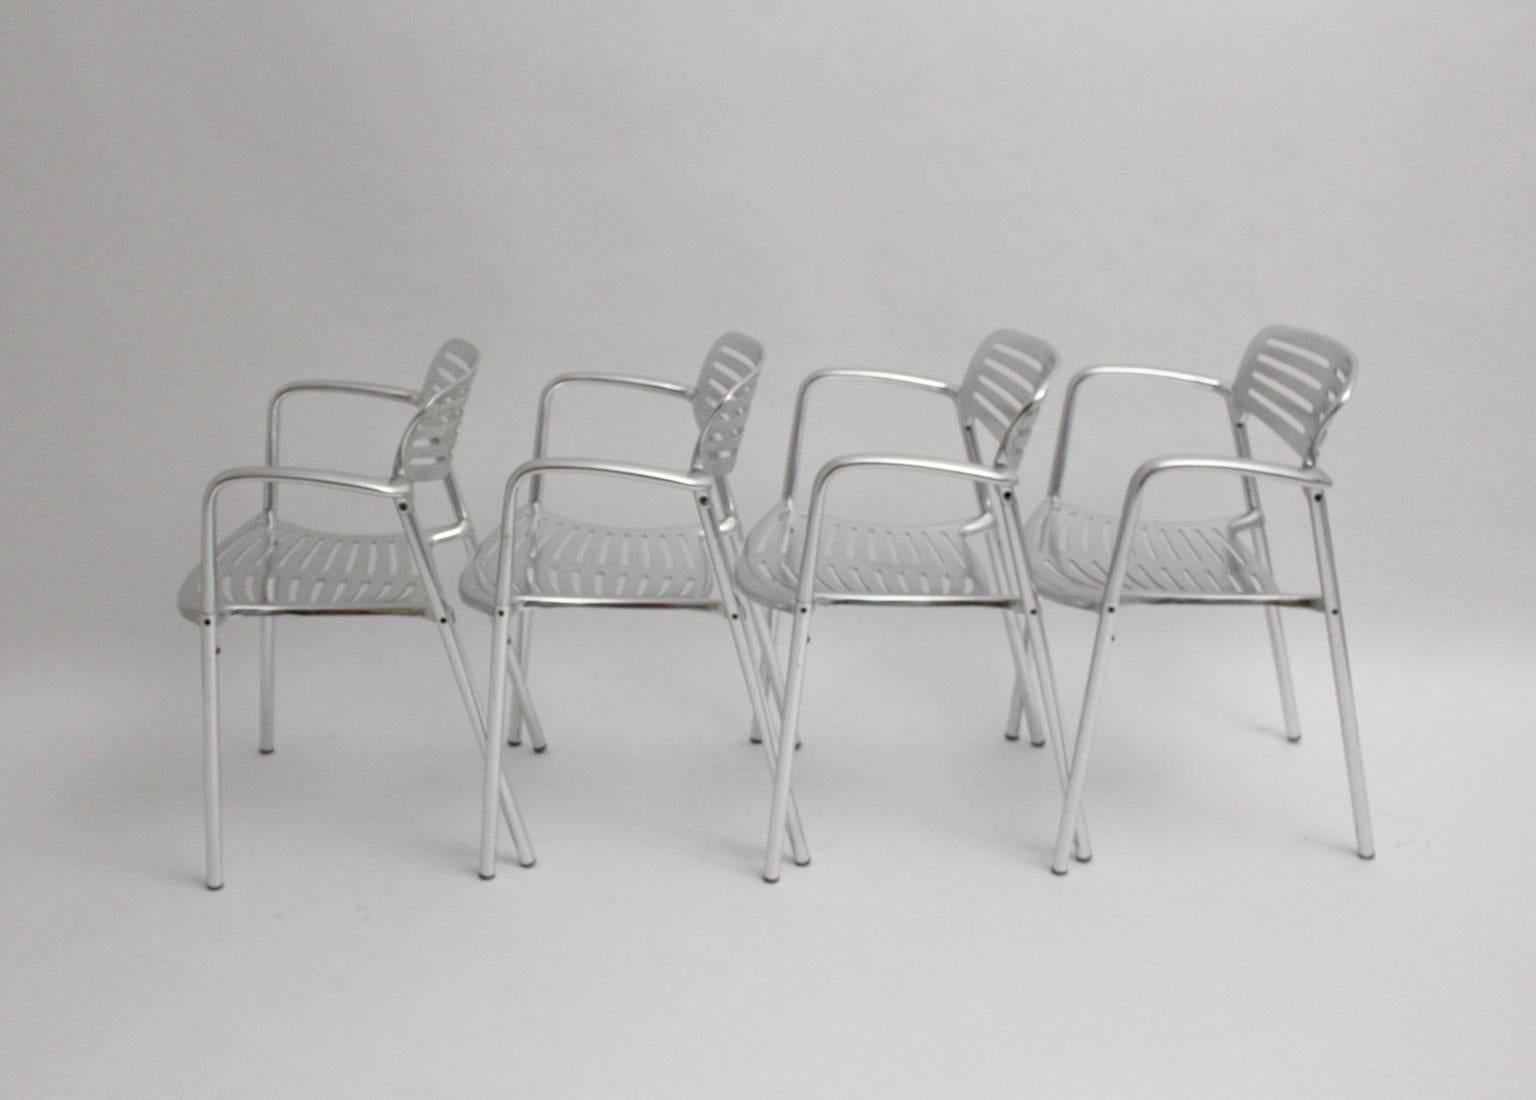 Moderno juego de 4 sillas o sillas de jardín o de comedor de aluminio de Jorge Pensi 1986-1988, España.
El nombre de Toledo procede de una fortaleza, que obtienen inexpugnable. 
Producido por Amat 3
Estas sillas comprenden el uso para interior y